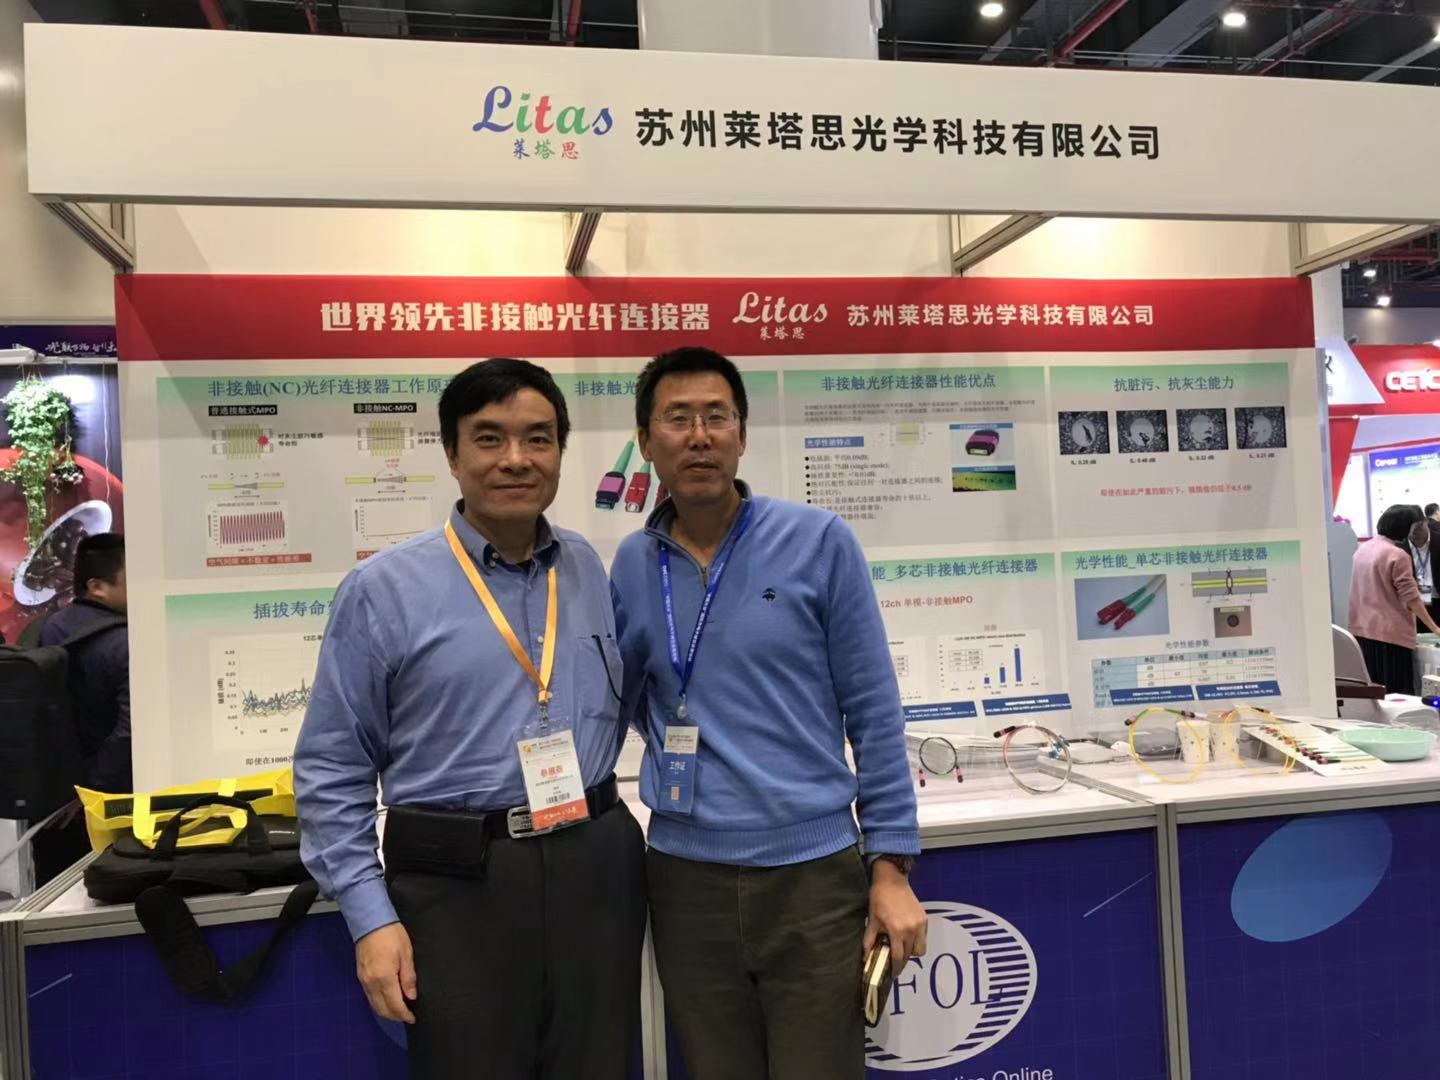 左为苏州莱塔思创始人简斌博士，右为光纤在线创始人刘铮博士